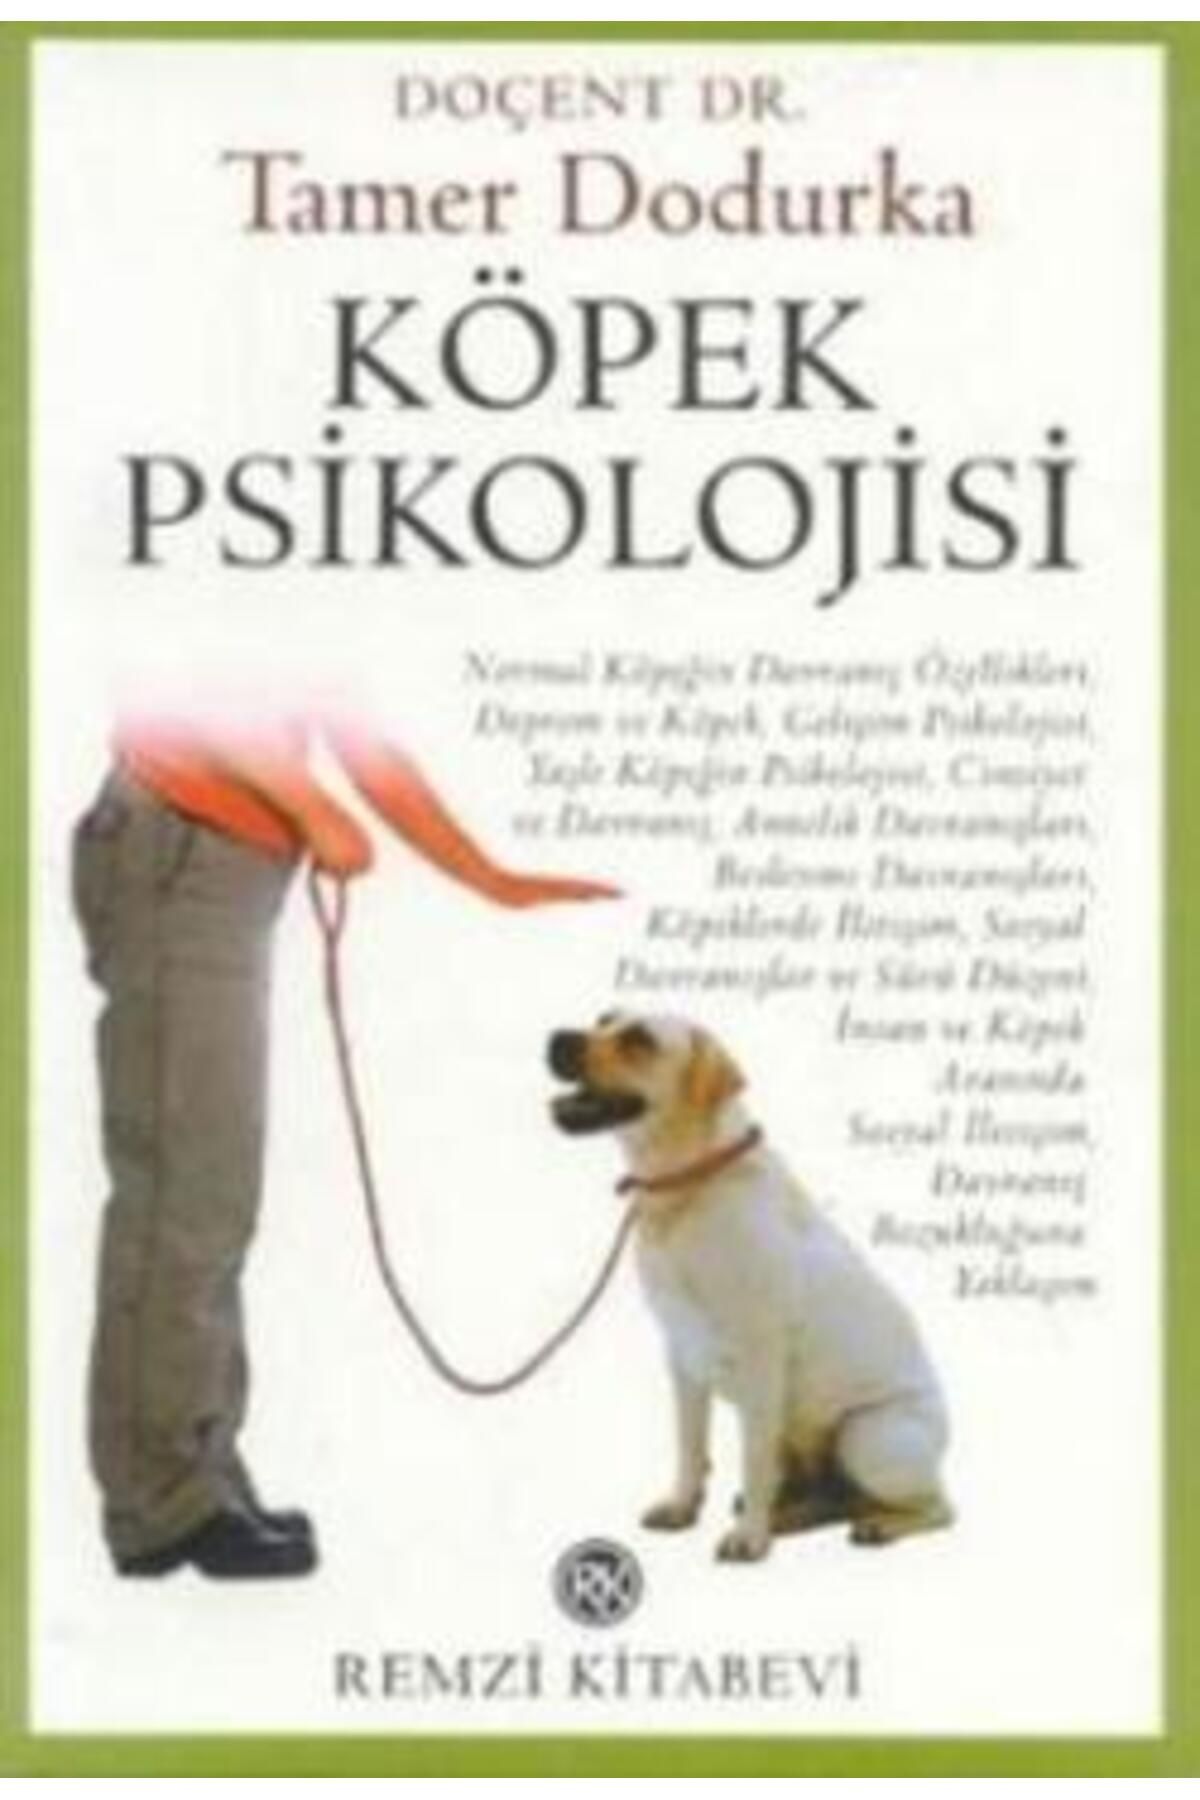 Remzi Kitabevi Köpek Psikolojisi kitabı - Tamer Dodurka - Remzi Kitabevi